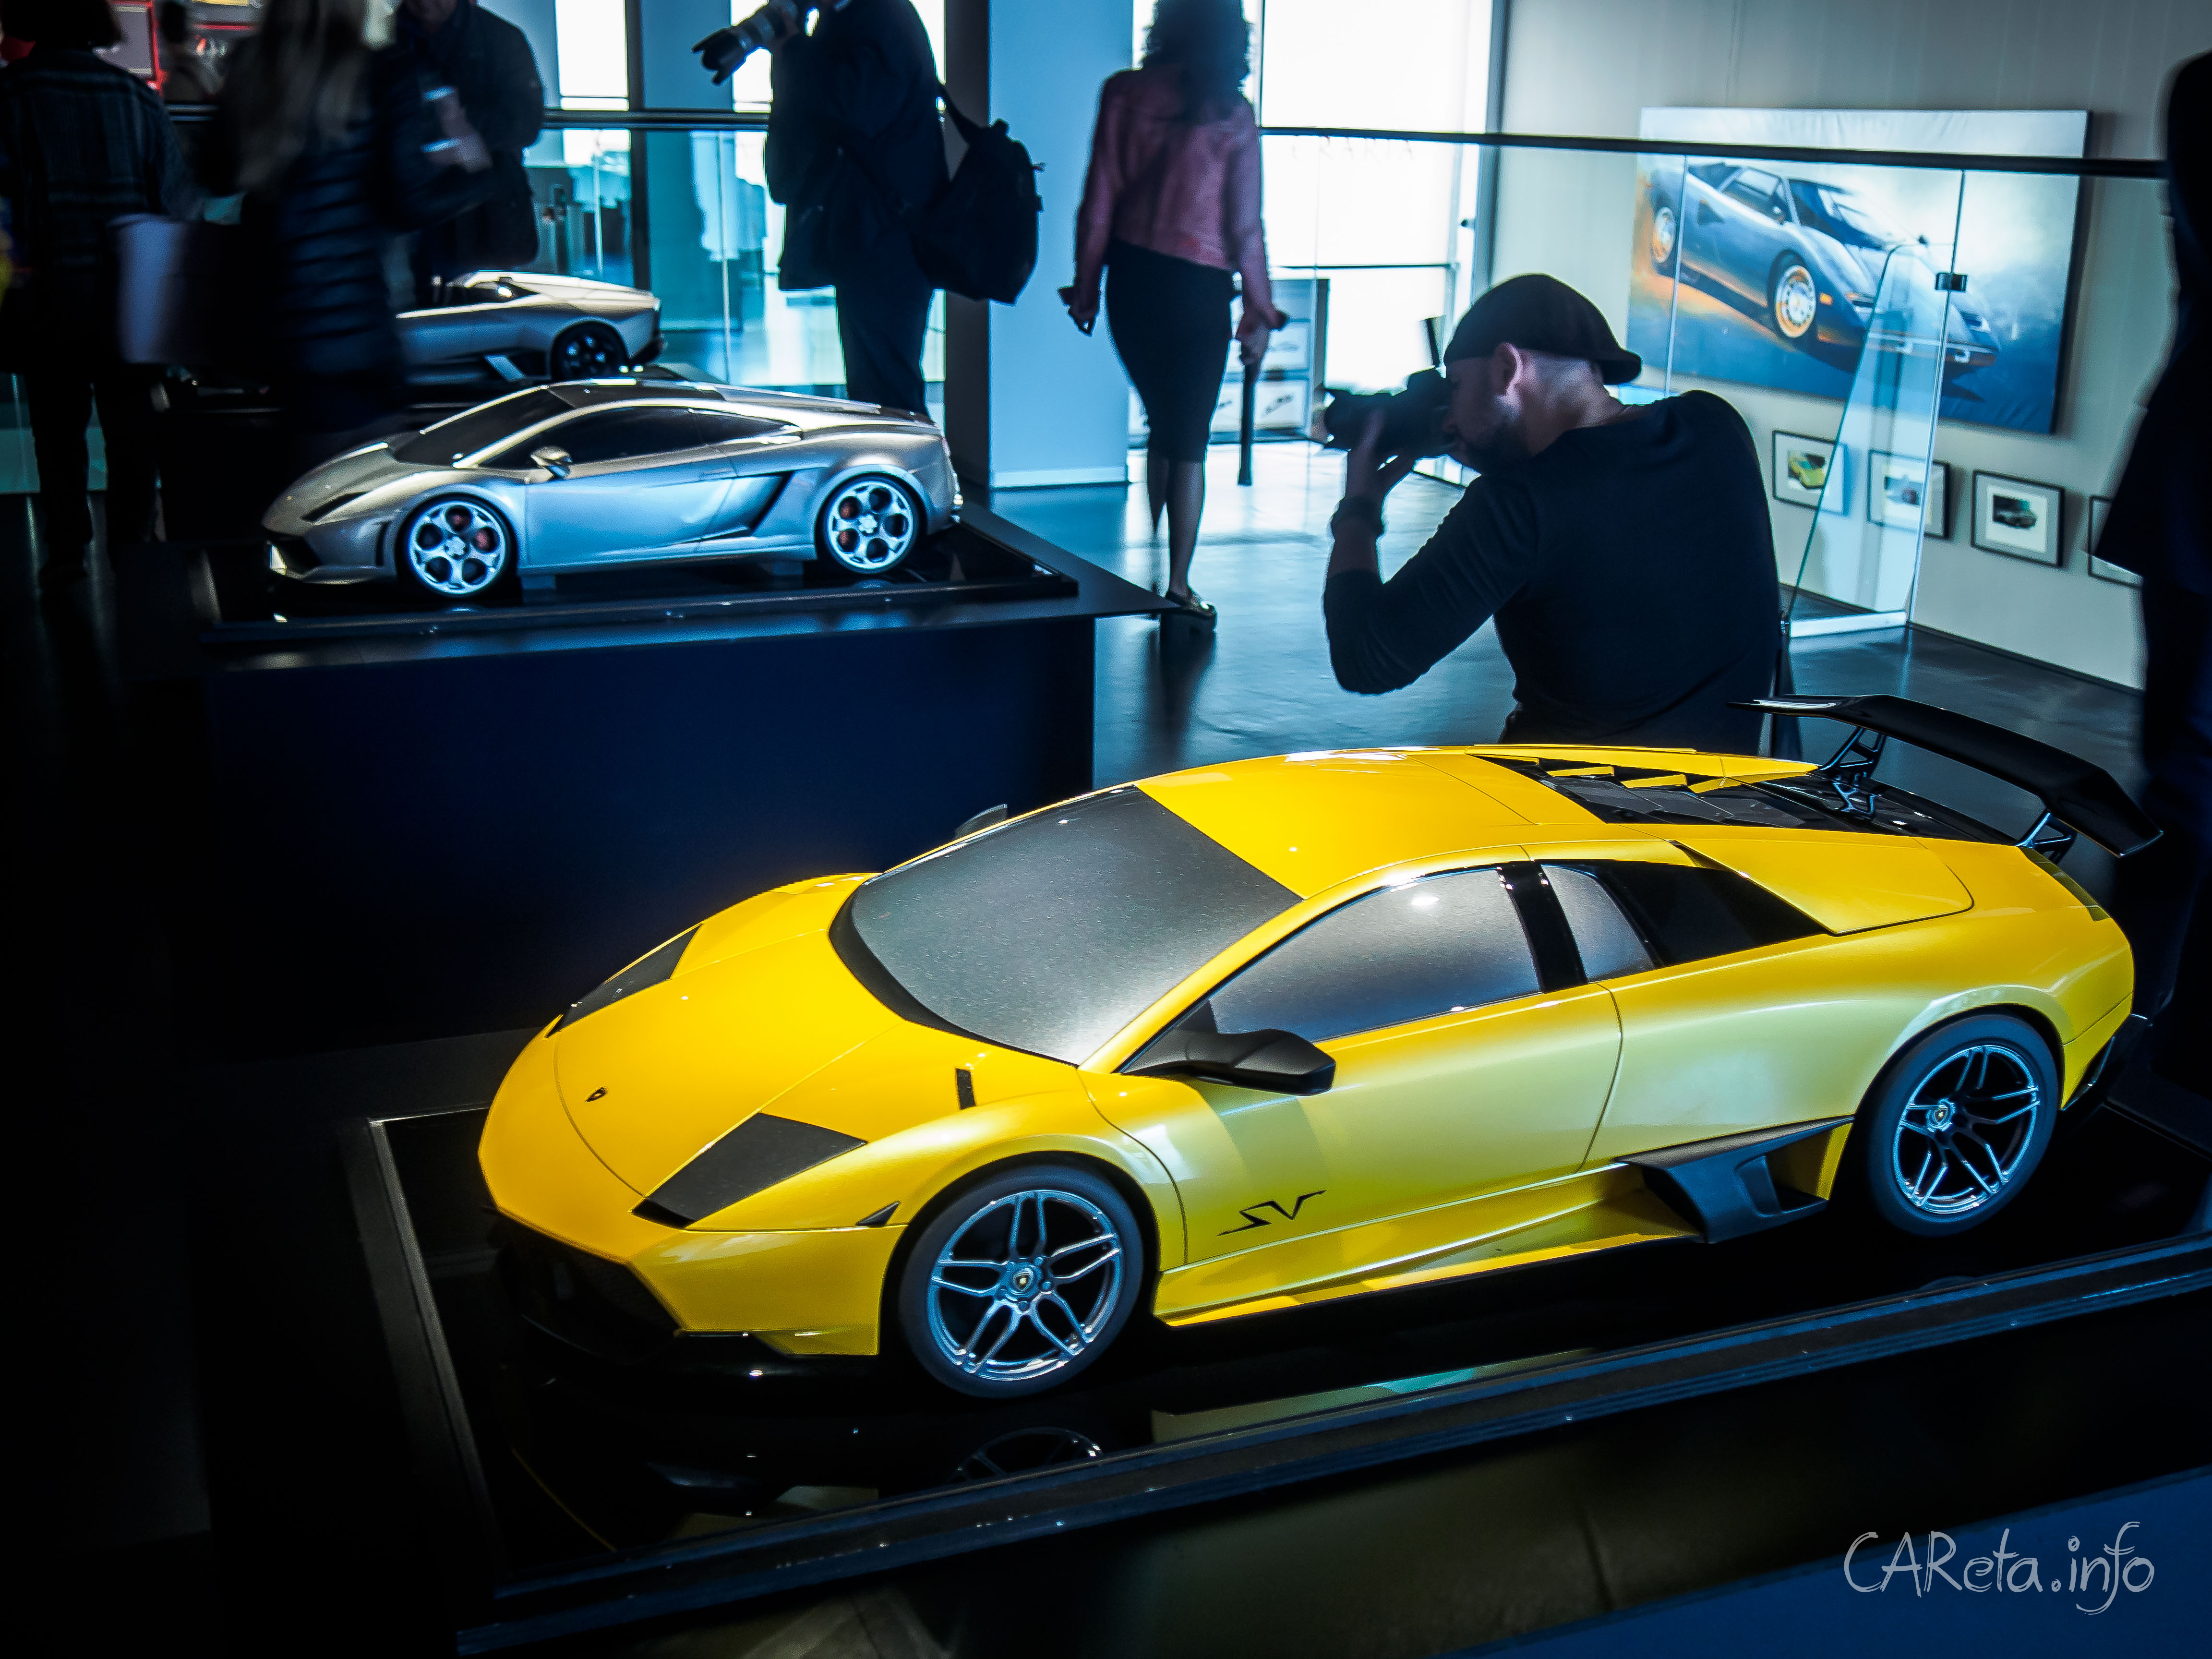 Автомобили в музее: Lamborghini в Эрарте